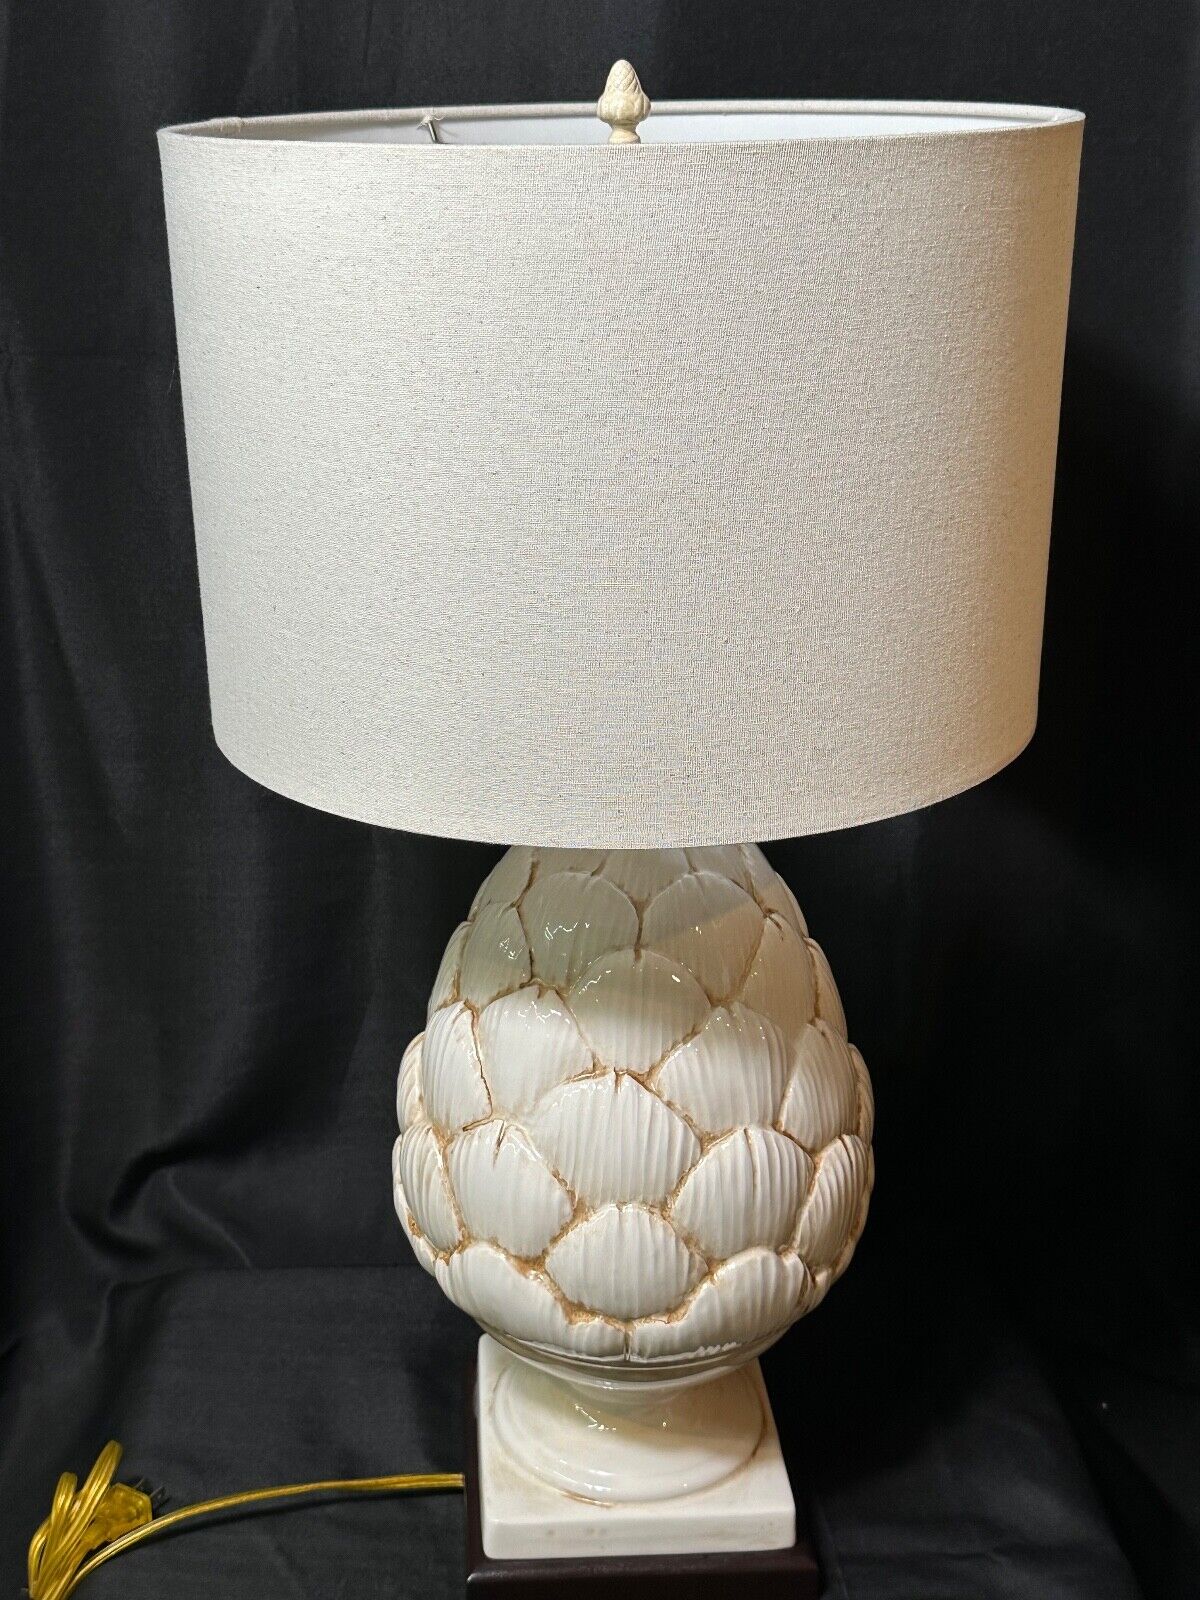 Vintage Ceramic Large Artichoke Table Lamp - Unique Home Cottage Decor Lighting